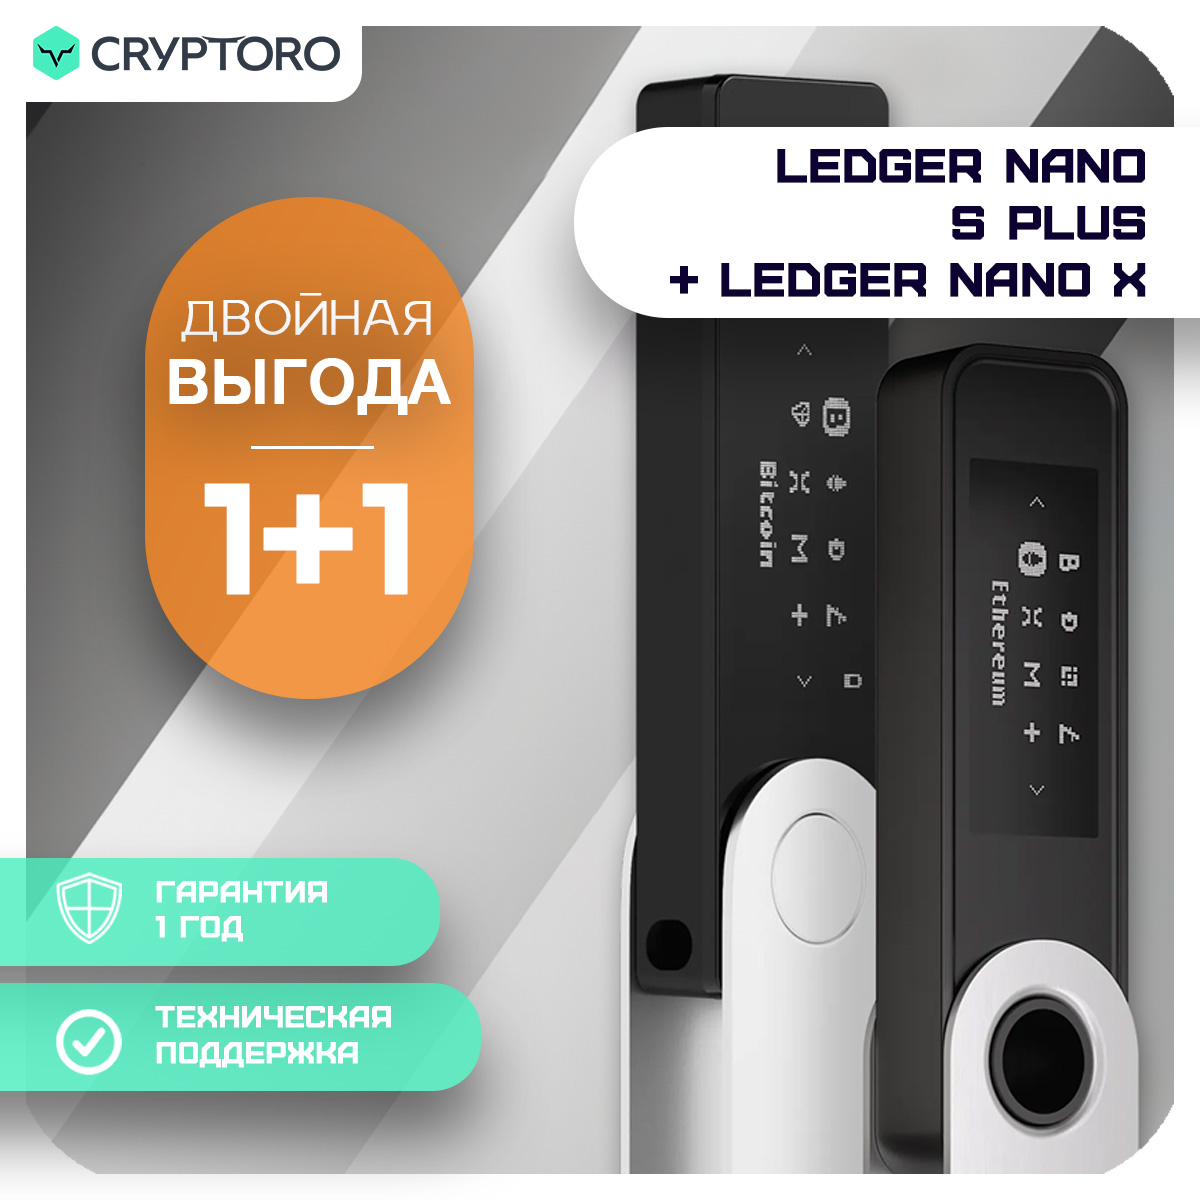 Набор Ledger Nano S Plus +  Ledger Nano X из 2-х аппаратных криптокошельков